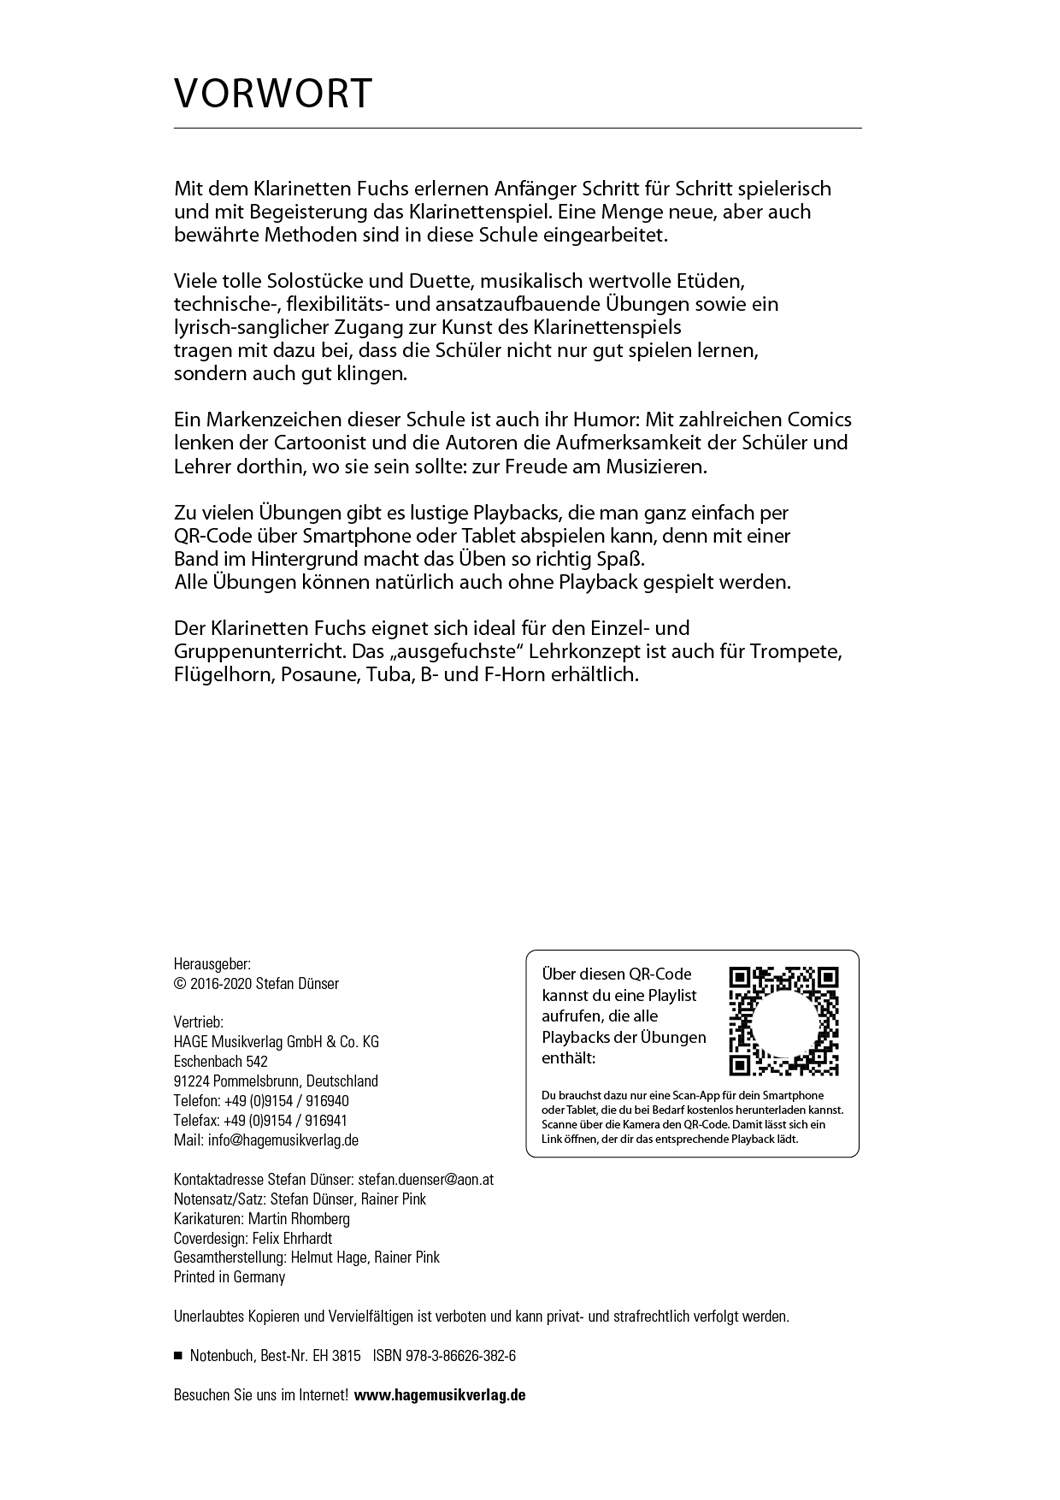 Klarinetten Fuchs Band 1 Seiten 3